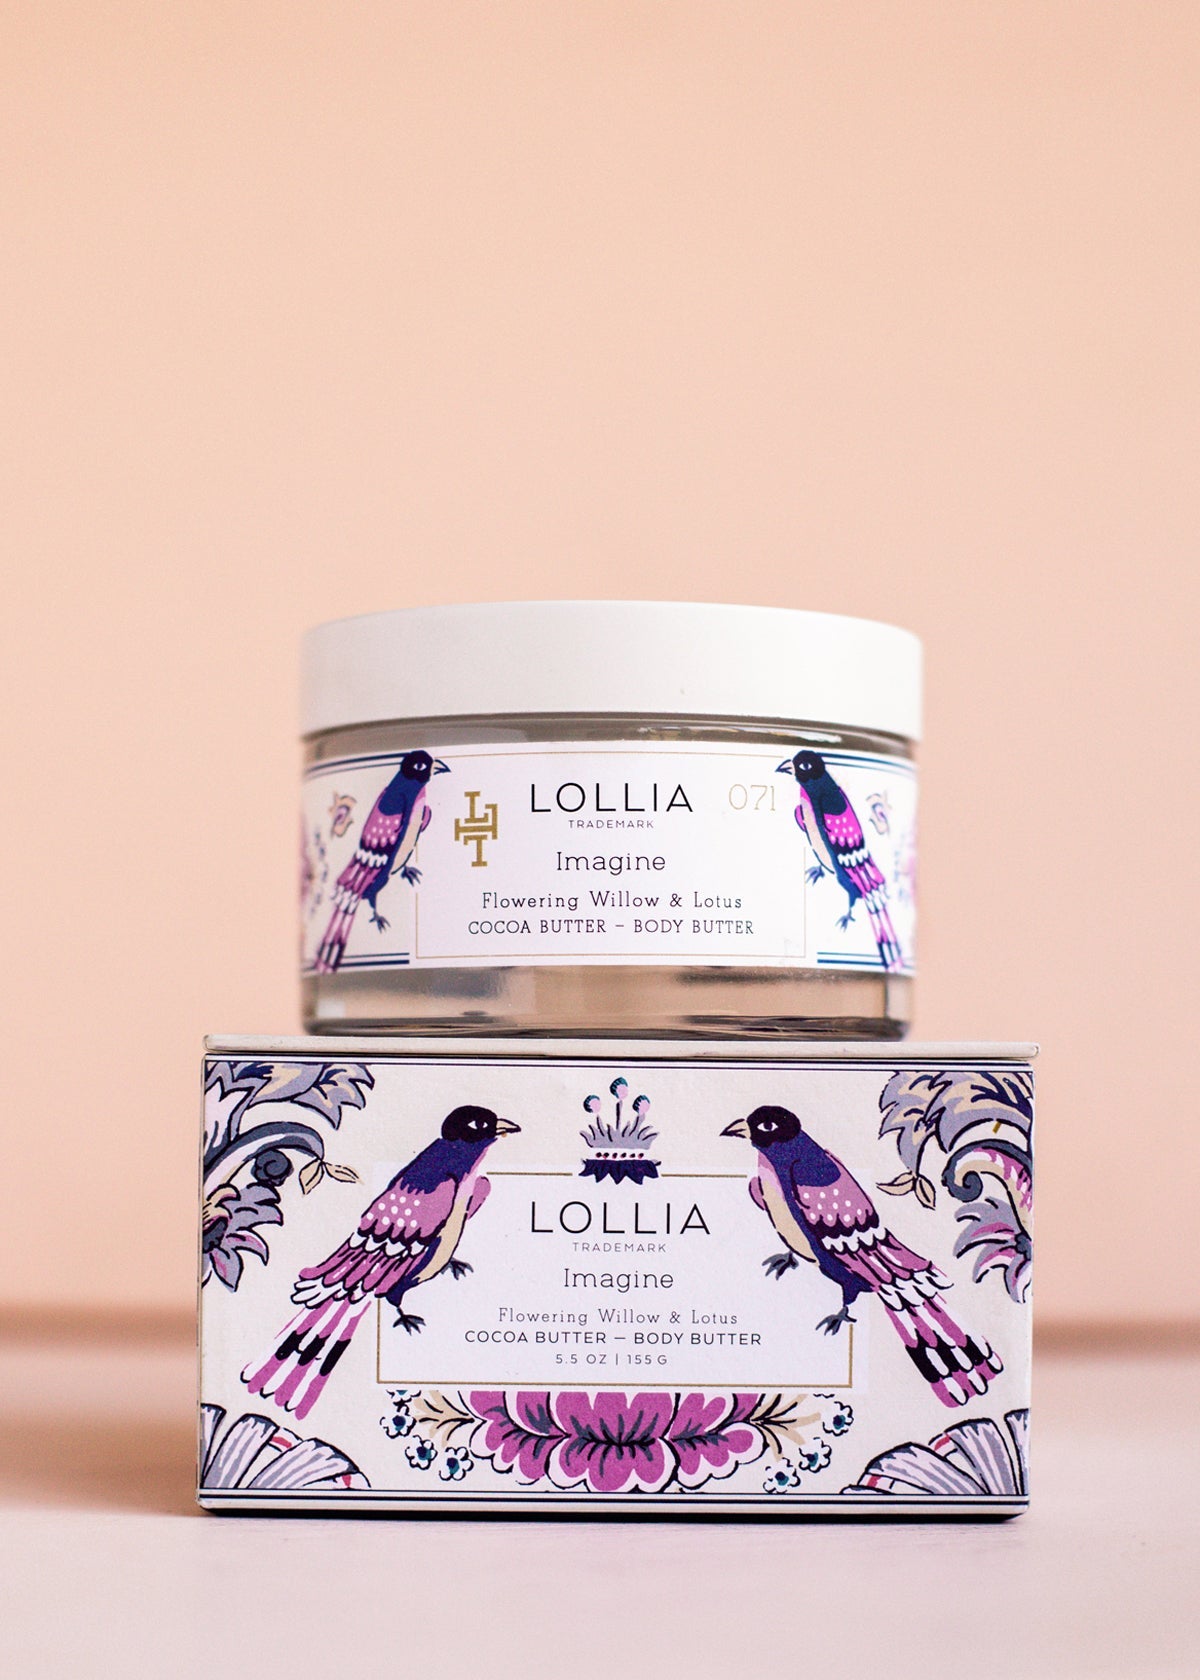 Lollia Imagine Perfumed Body Butter - Pharm Favorites by Economy Pharmacy